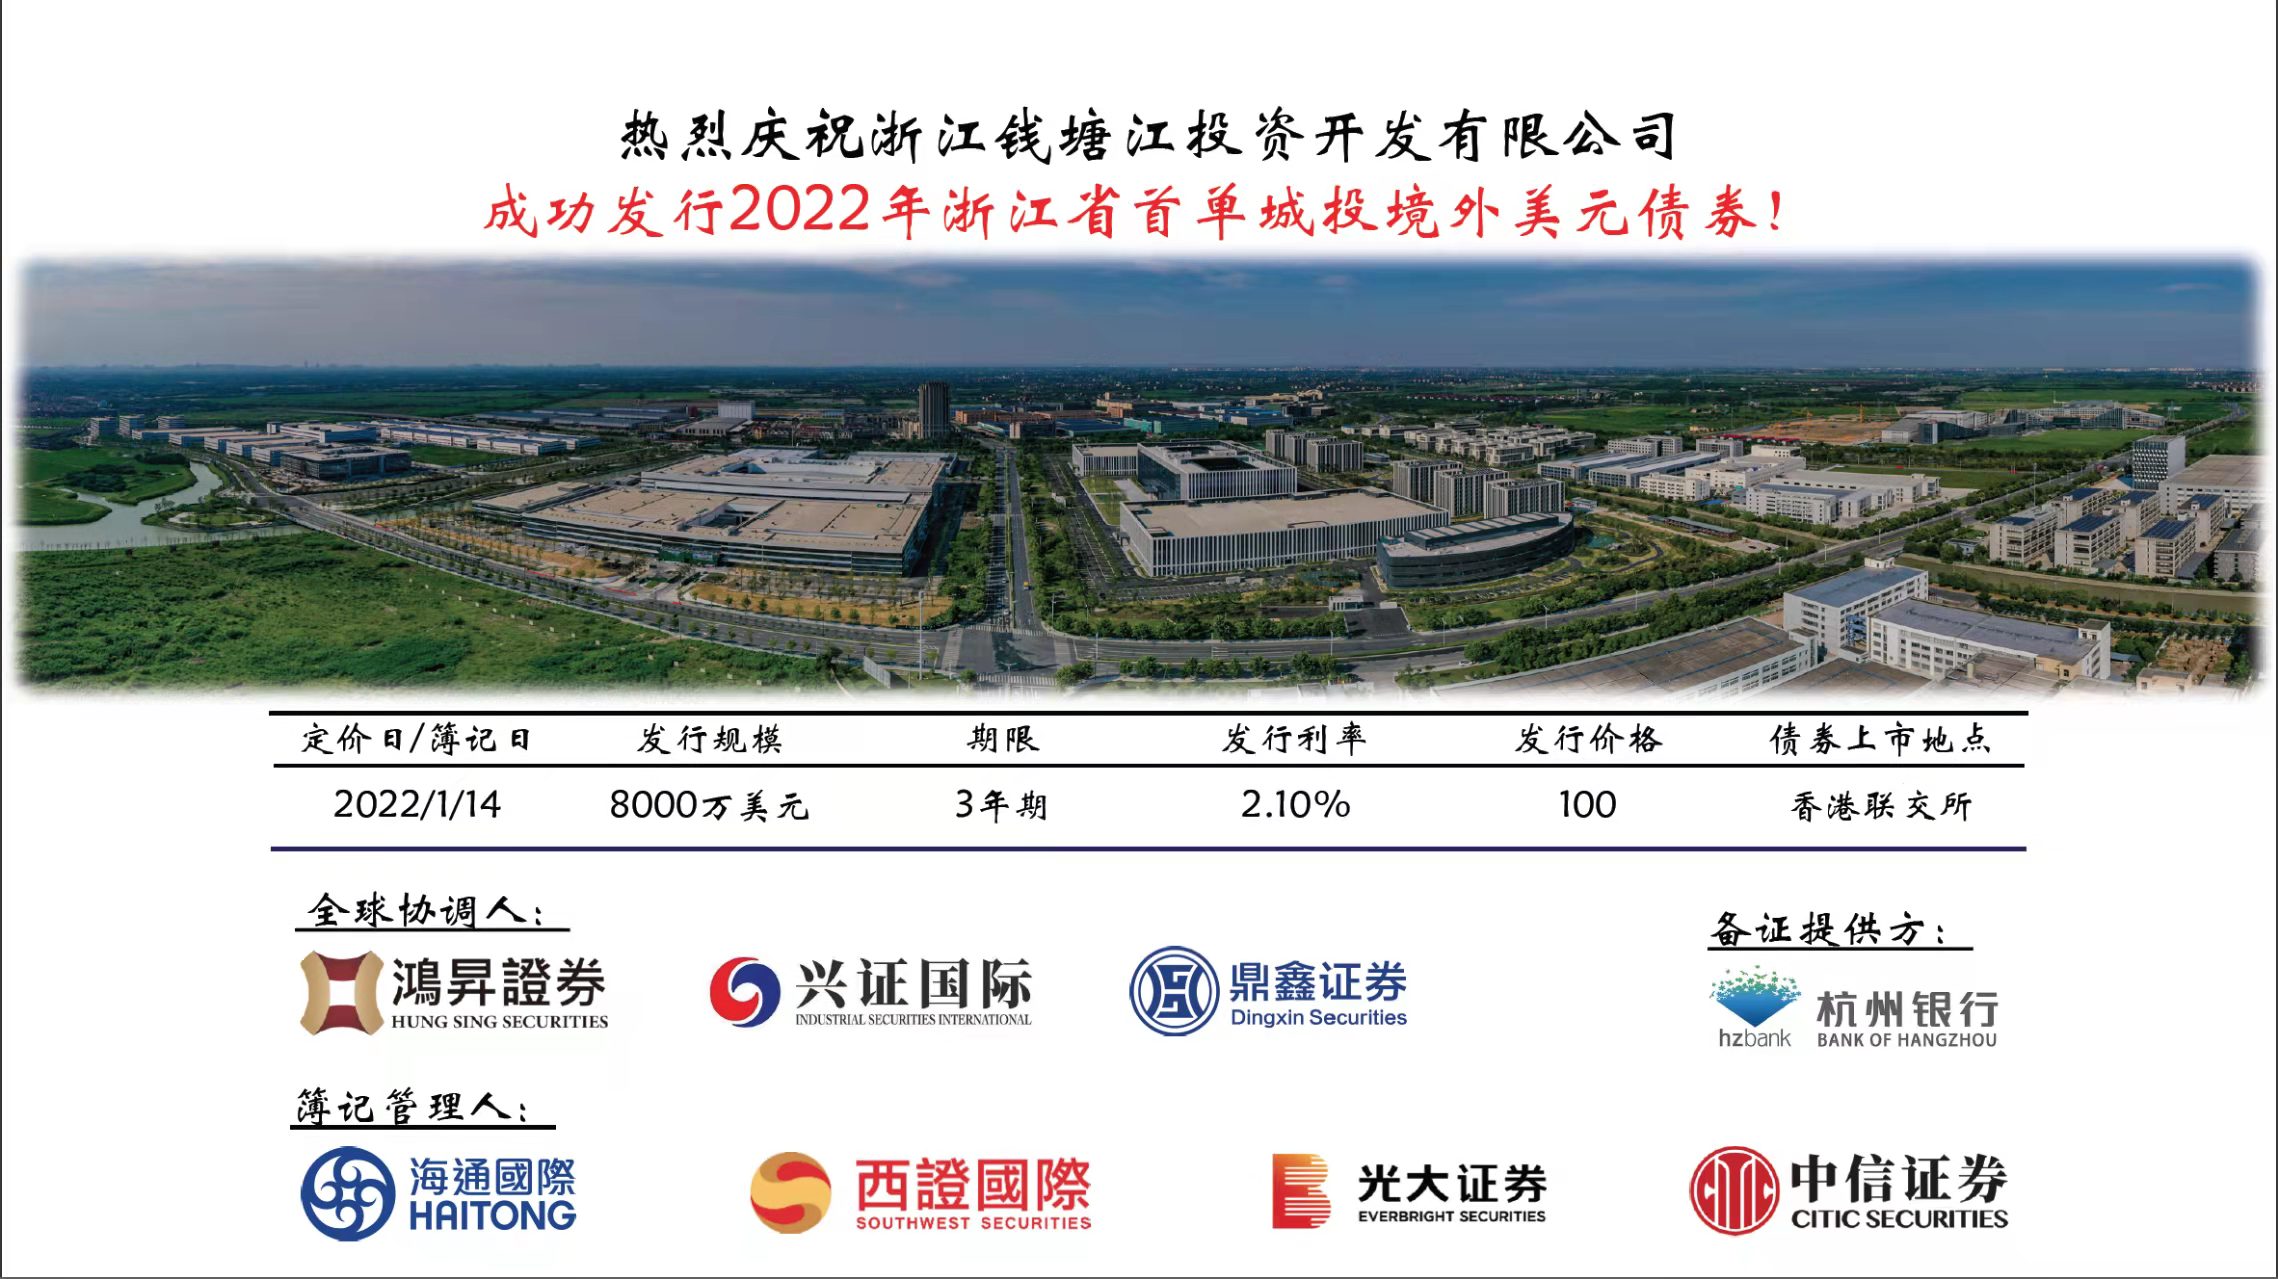 2022 - 浙江錢塘江投資開發有限公司 - 全球協調人